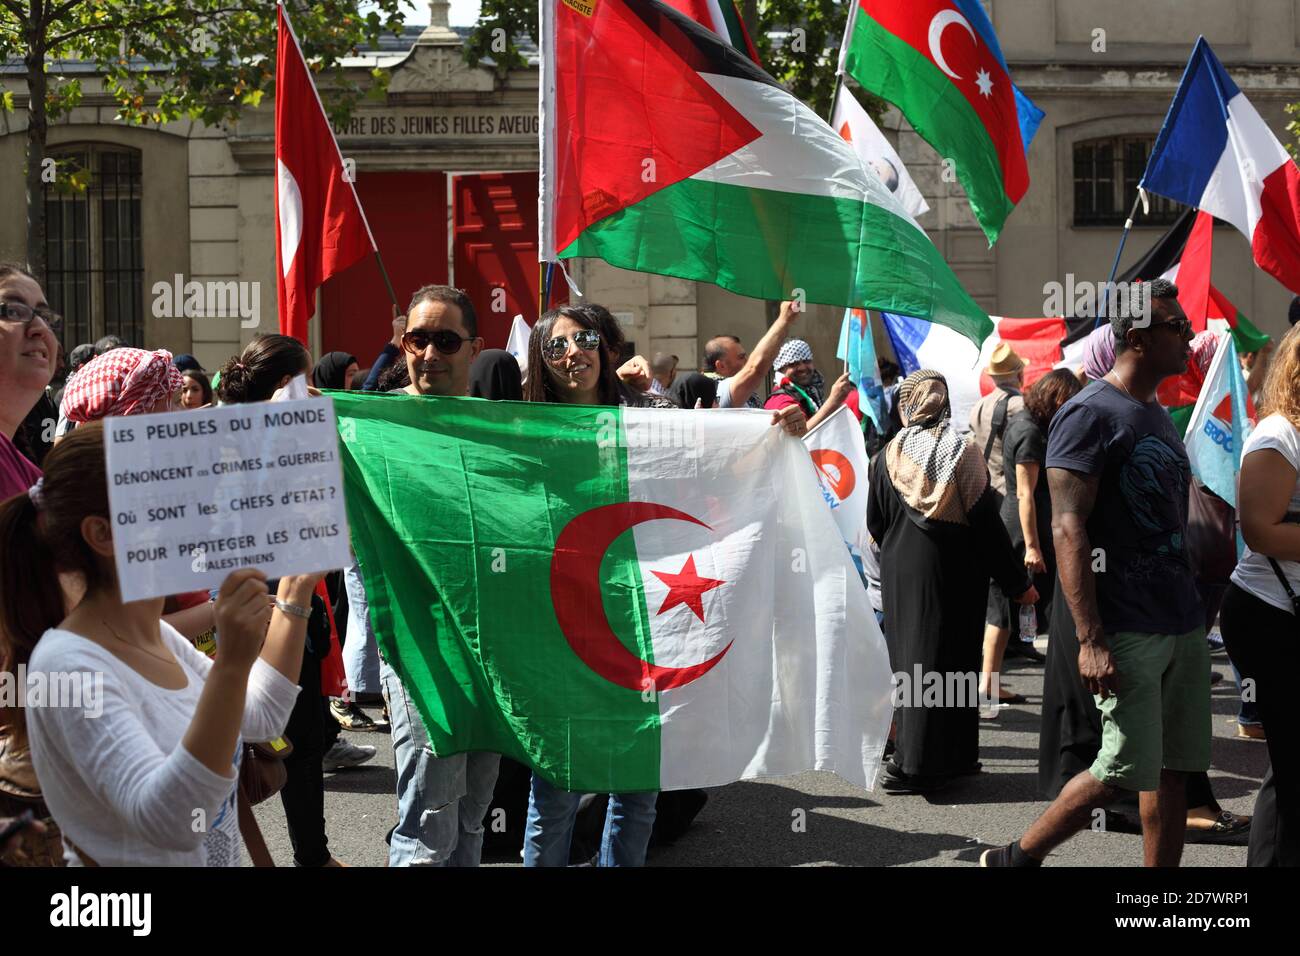 Manifestation pro-palestinienne à Paris en faveur du peuple de Gaza à la suite de l'offensive israélienne qui a coûté la vie à 1,600 personnes Palestiniens Banque D'Images